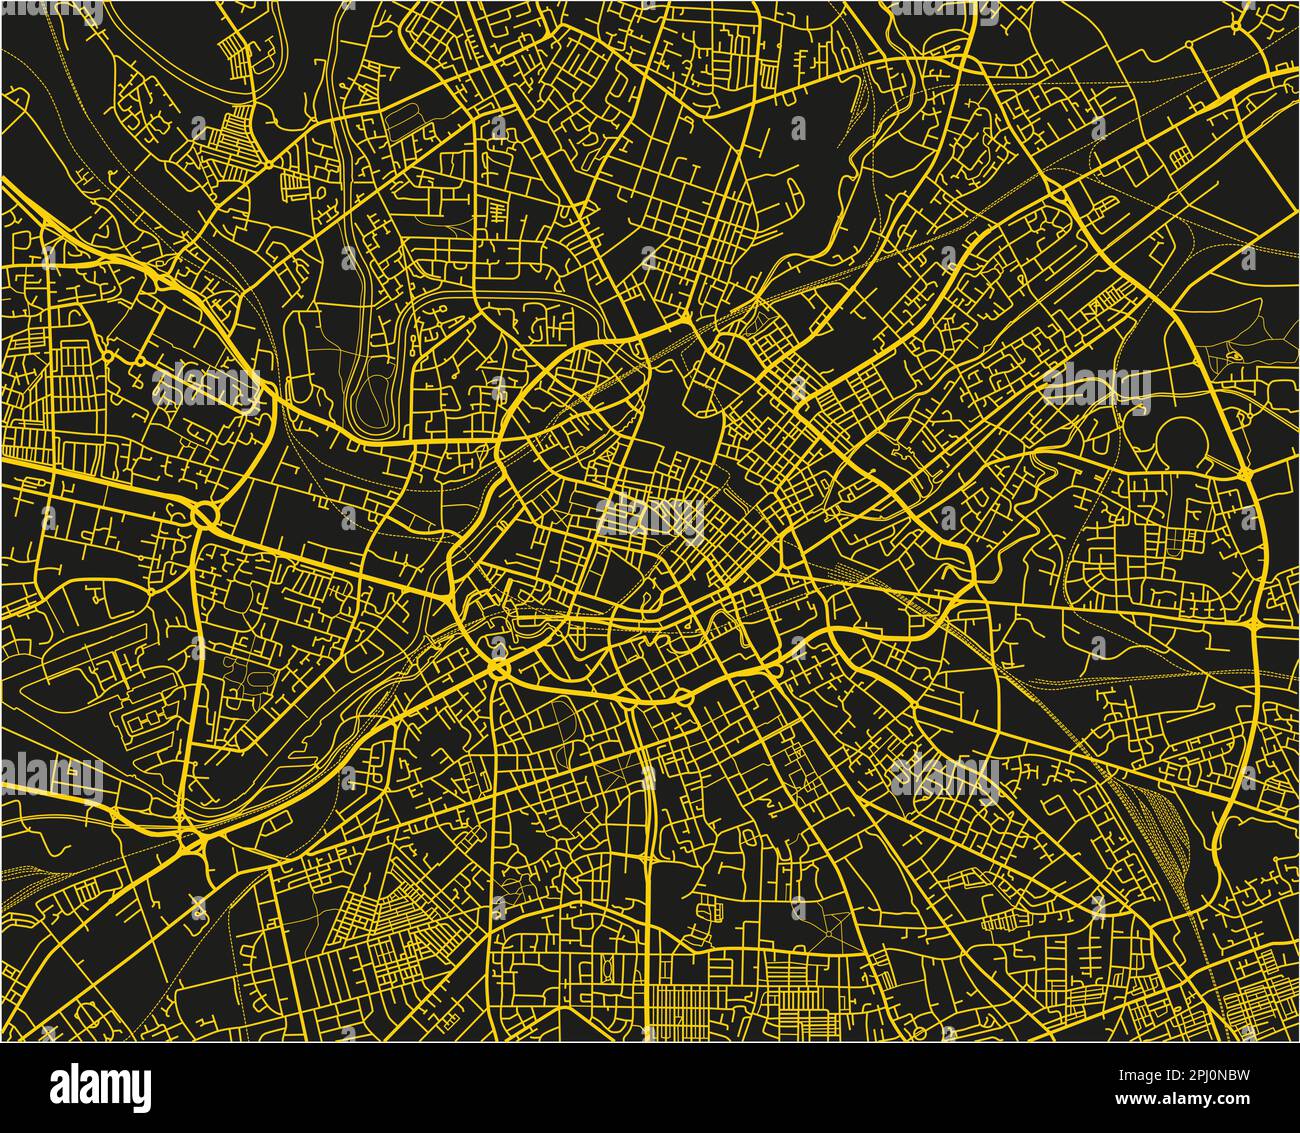 Schwarz-gelber Stadtplan von Manchester mit gut organisierten getrennten Schichten. Stock Vektor